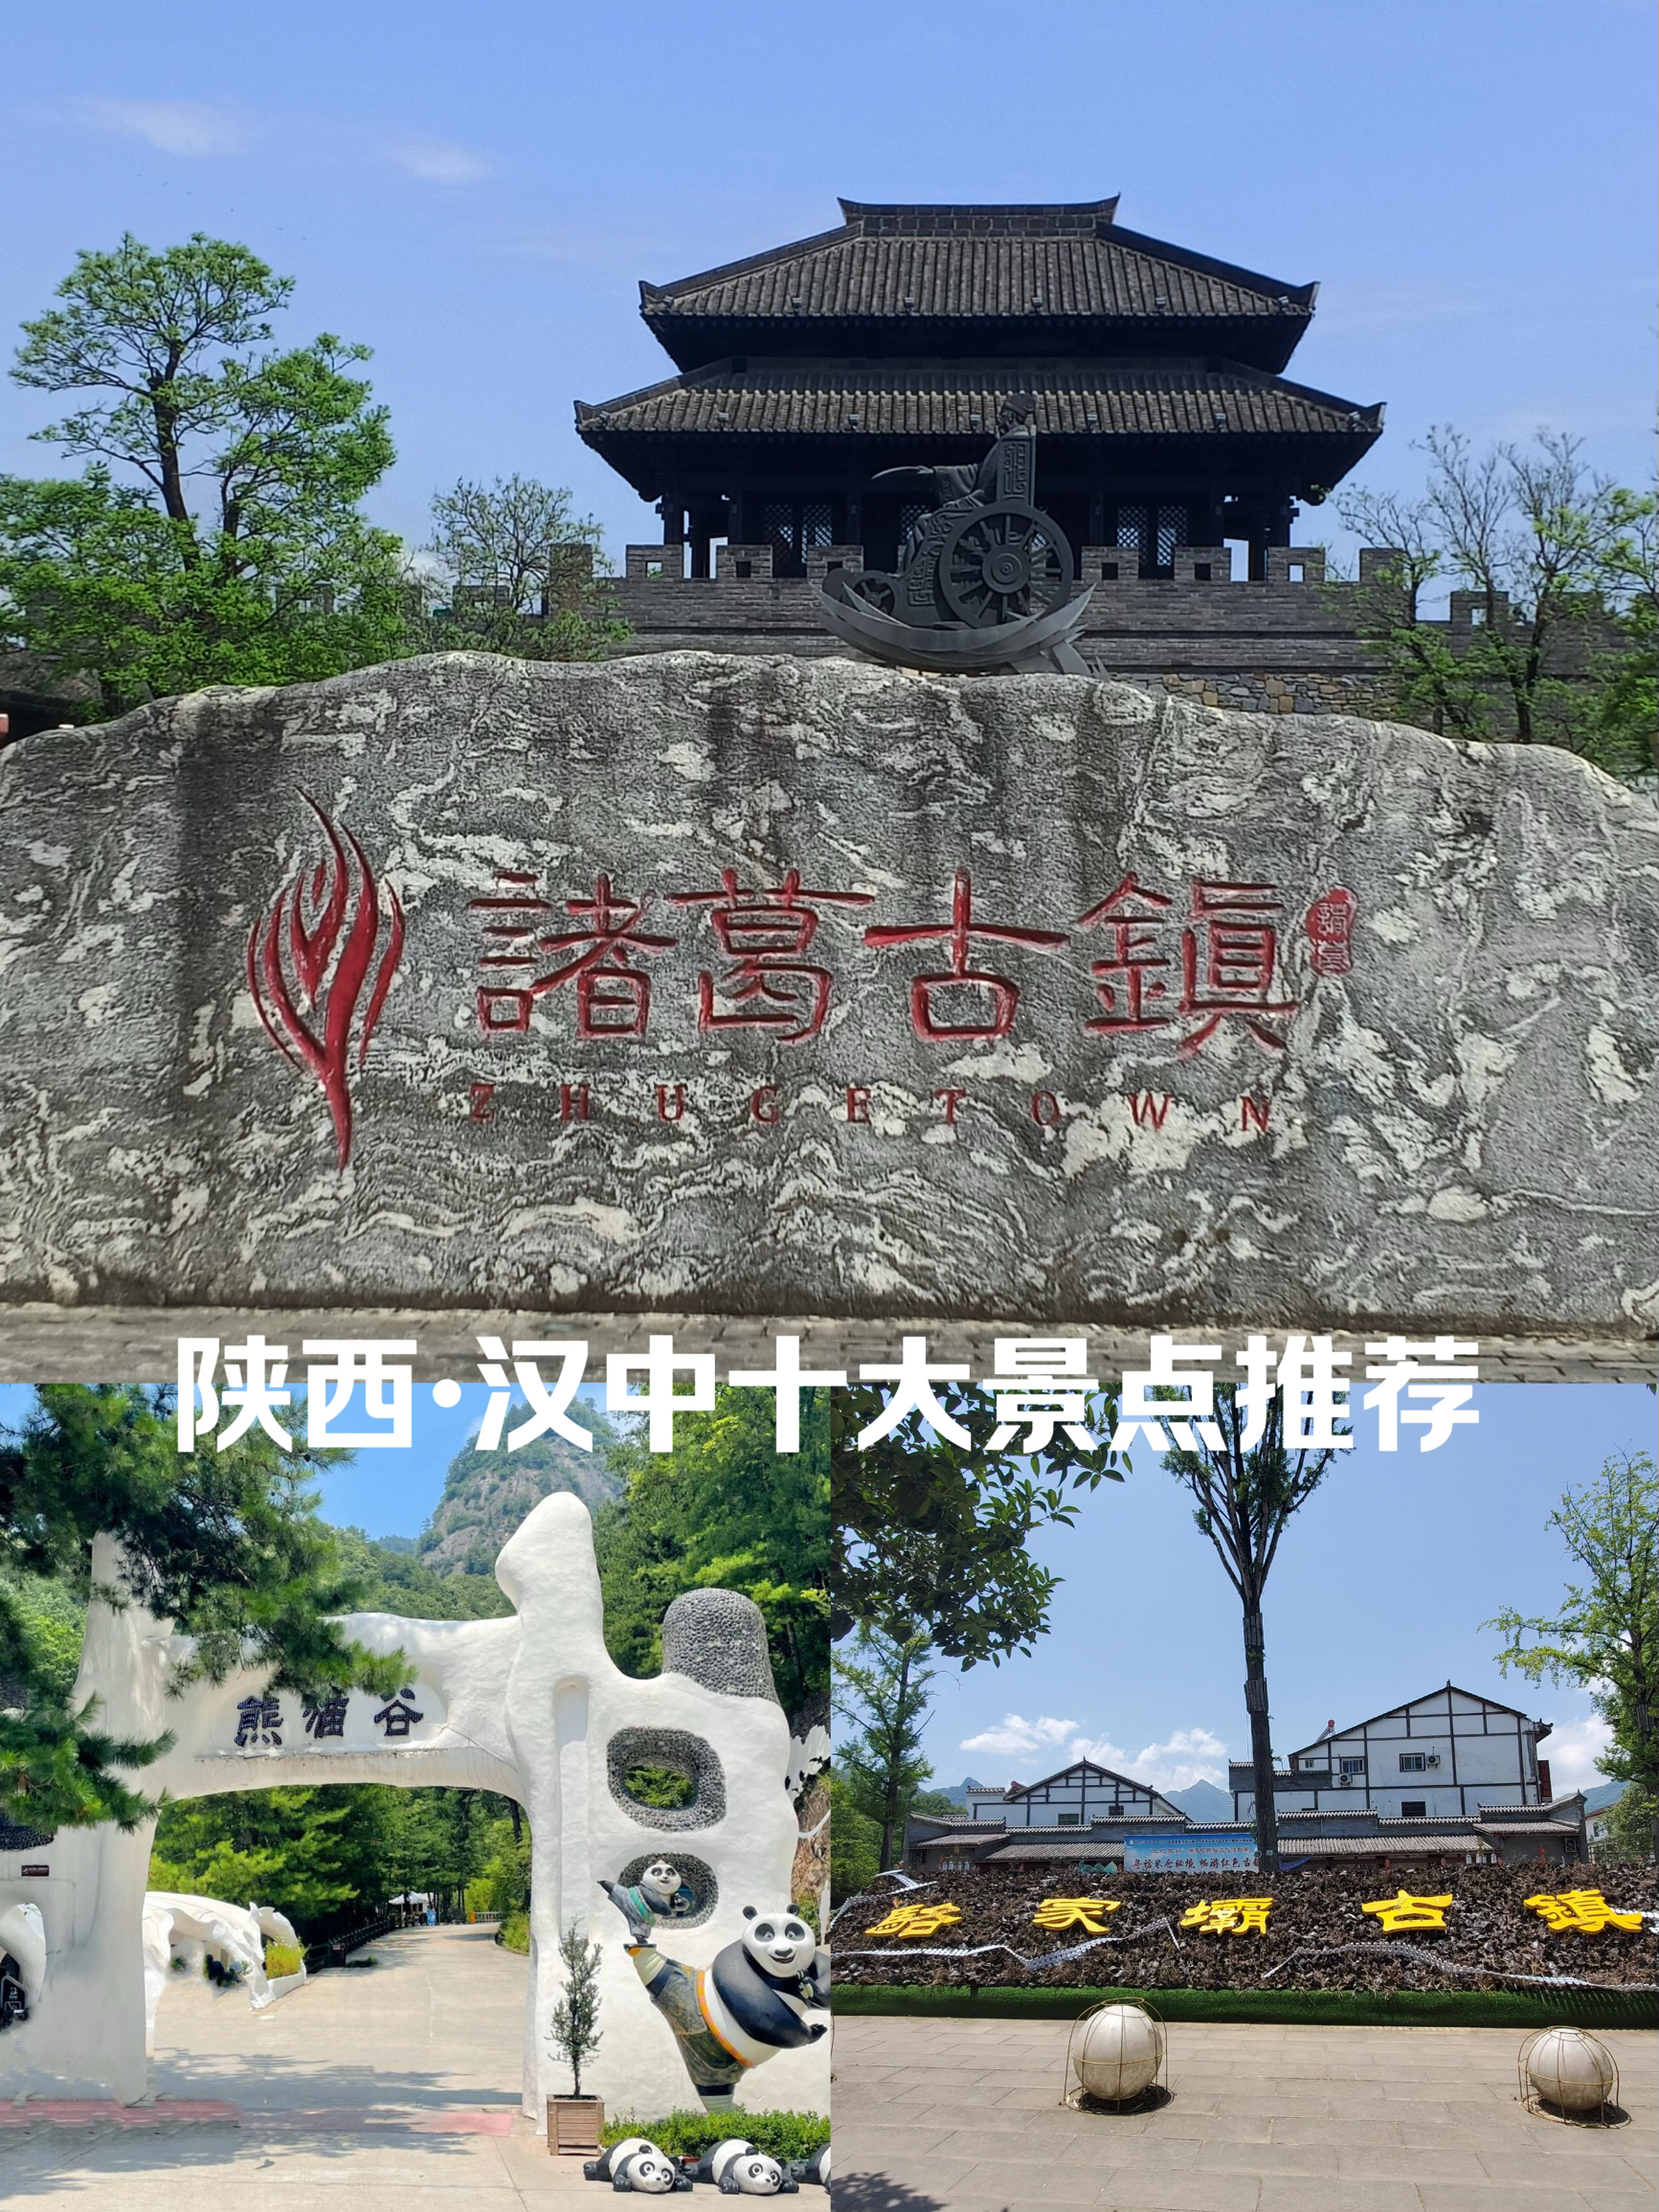 魅力汉中历史文化名城 10 大景点推荐